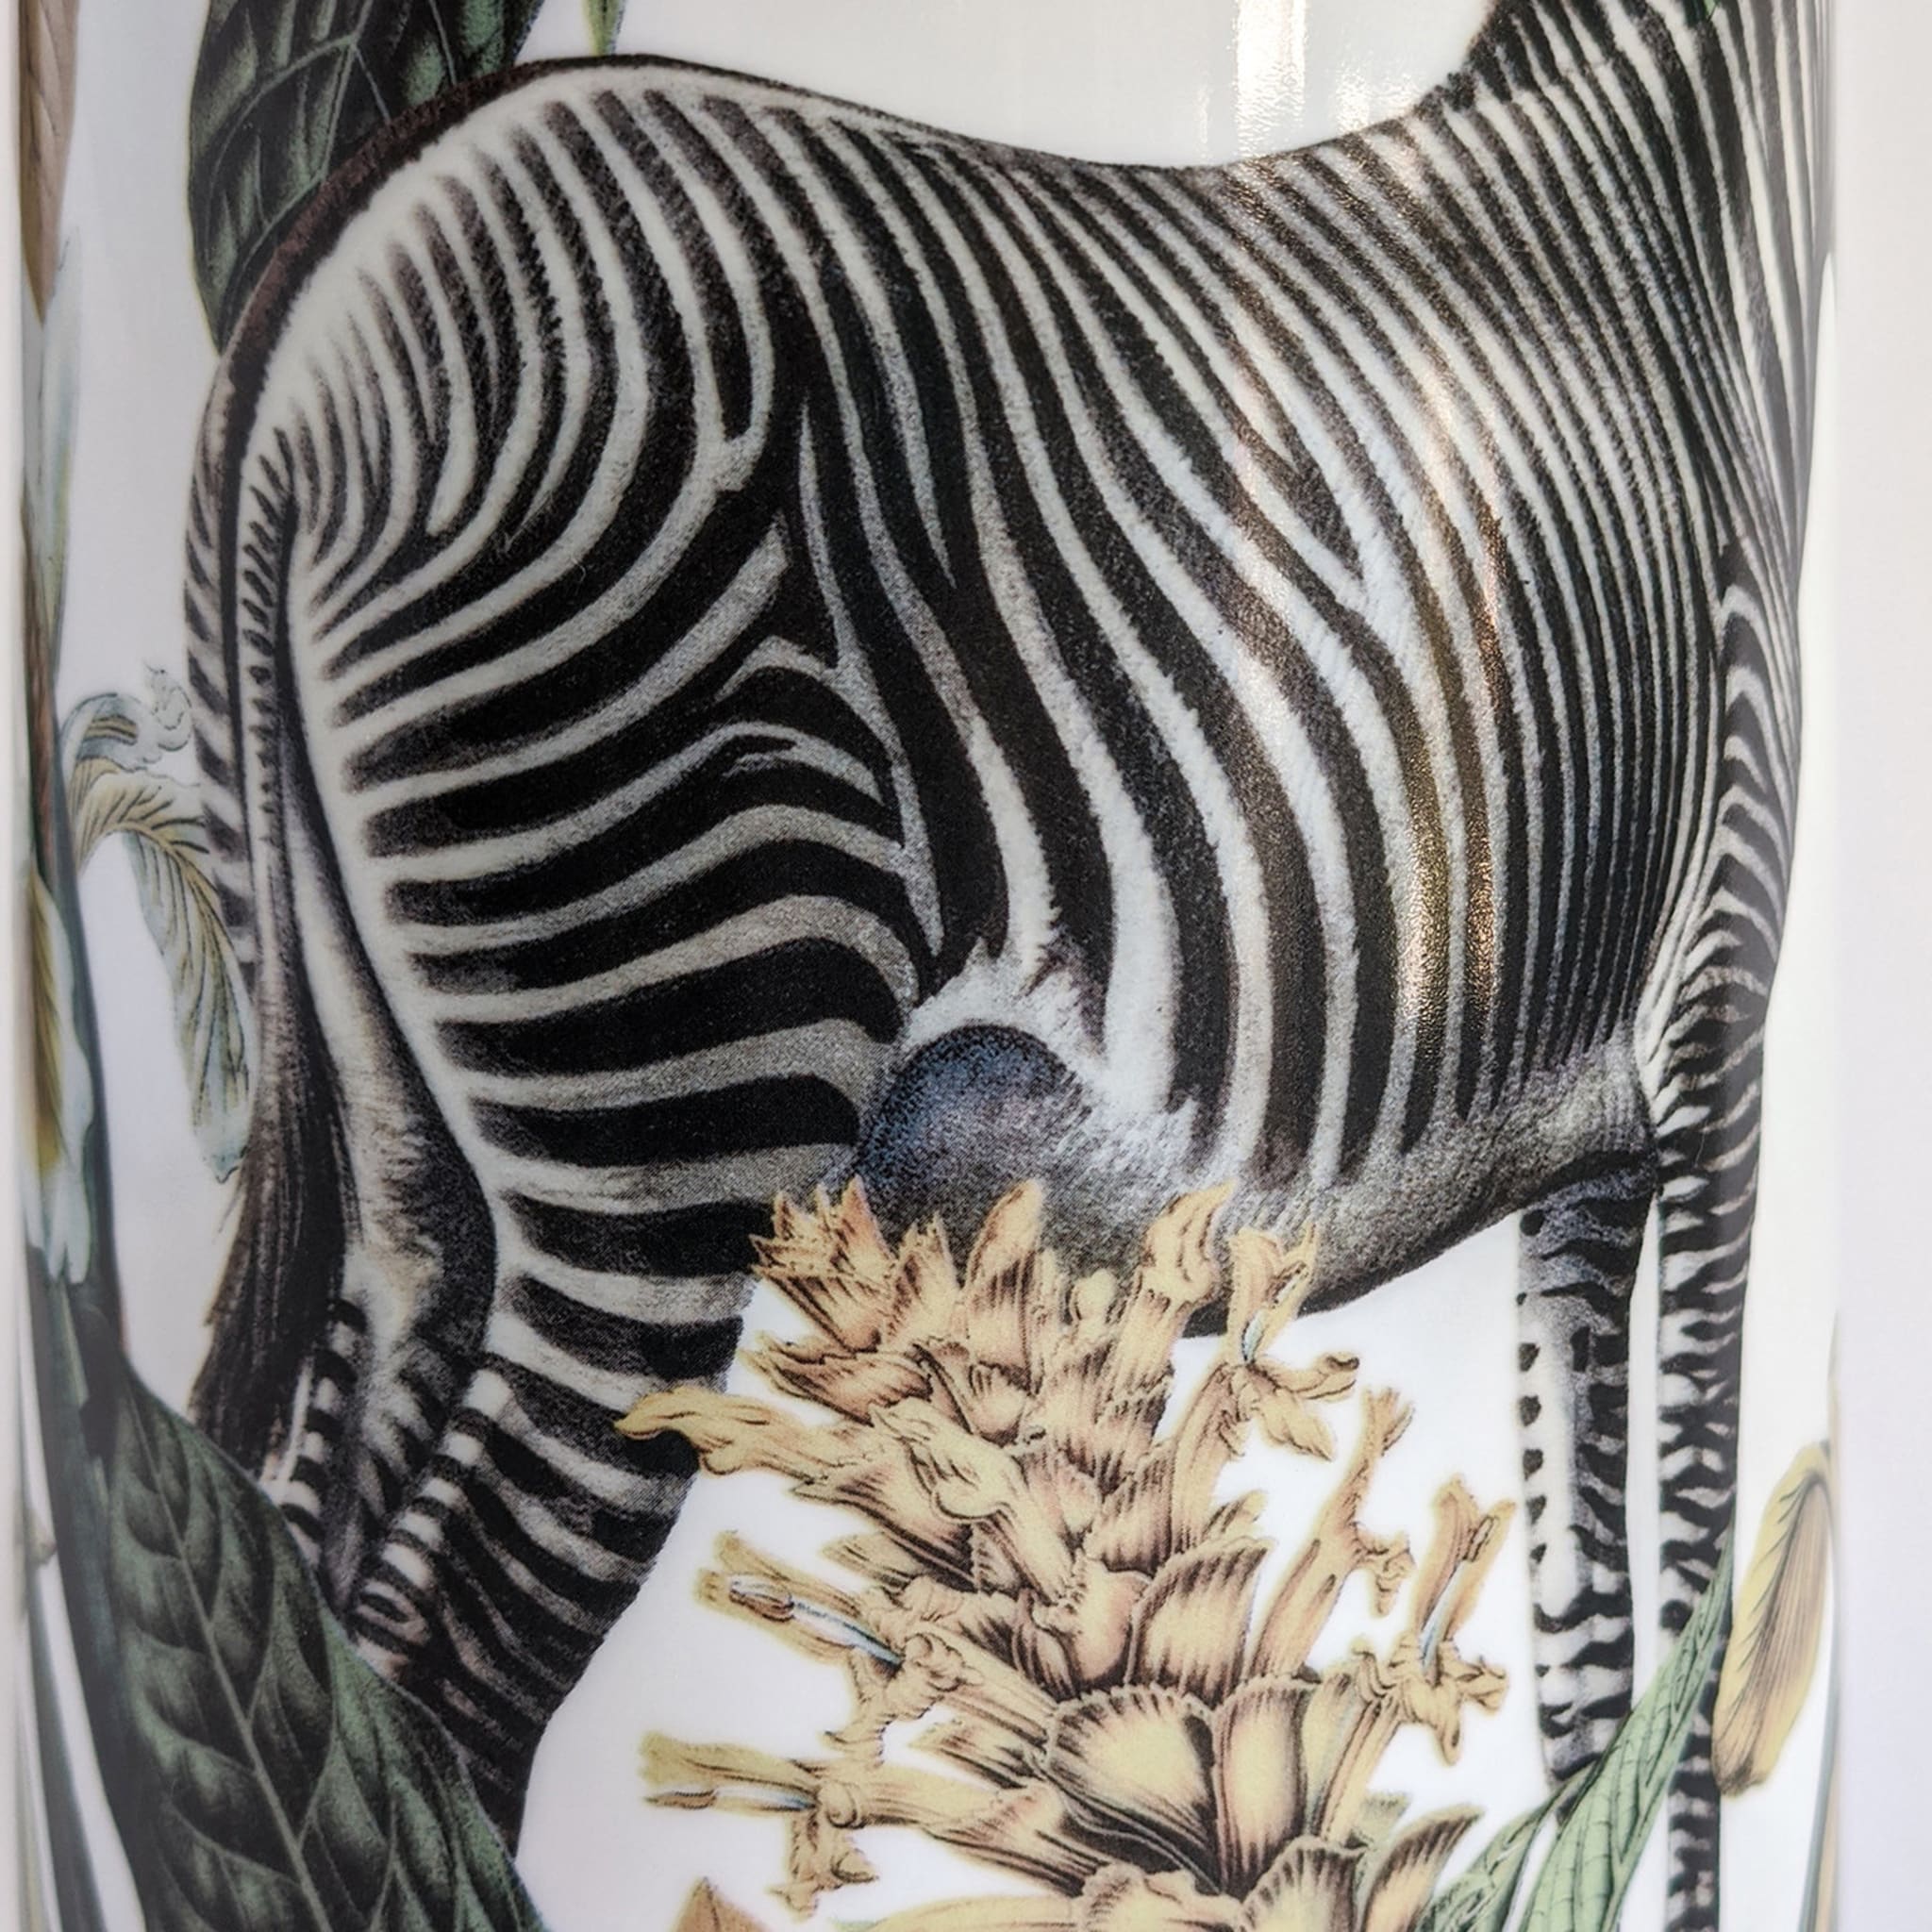 Animalia Porcelain Cylindrical Vase With Zebra - Alternative view 4